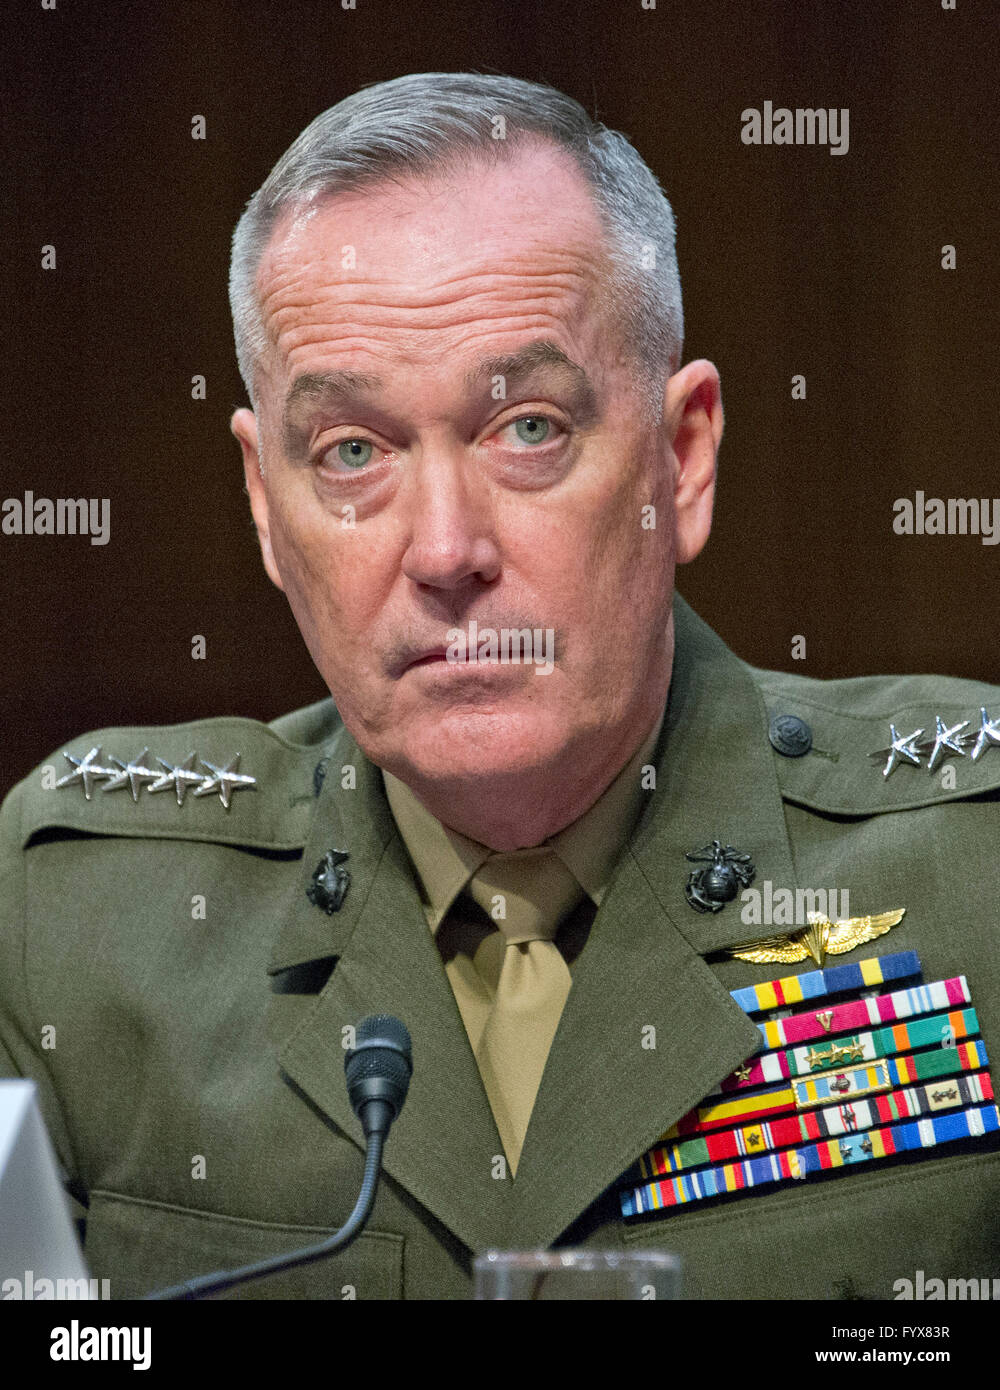 General <b>Joseph F. Dunford</b>, Jr., USMC, Chairman of The Joint Chiefs Of Staff, ... - general-joseph-f-dunford-jr-usmc-chairman-of-the-joint-chiefs-of-staff-FYX83R